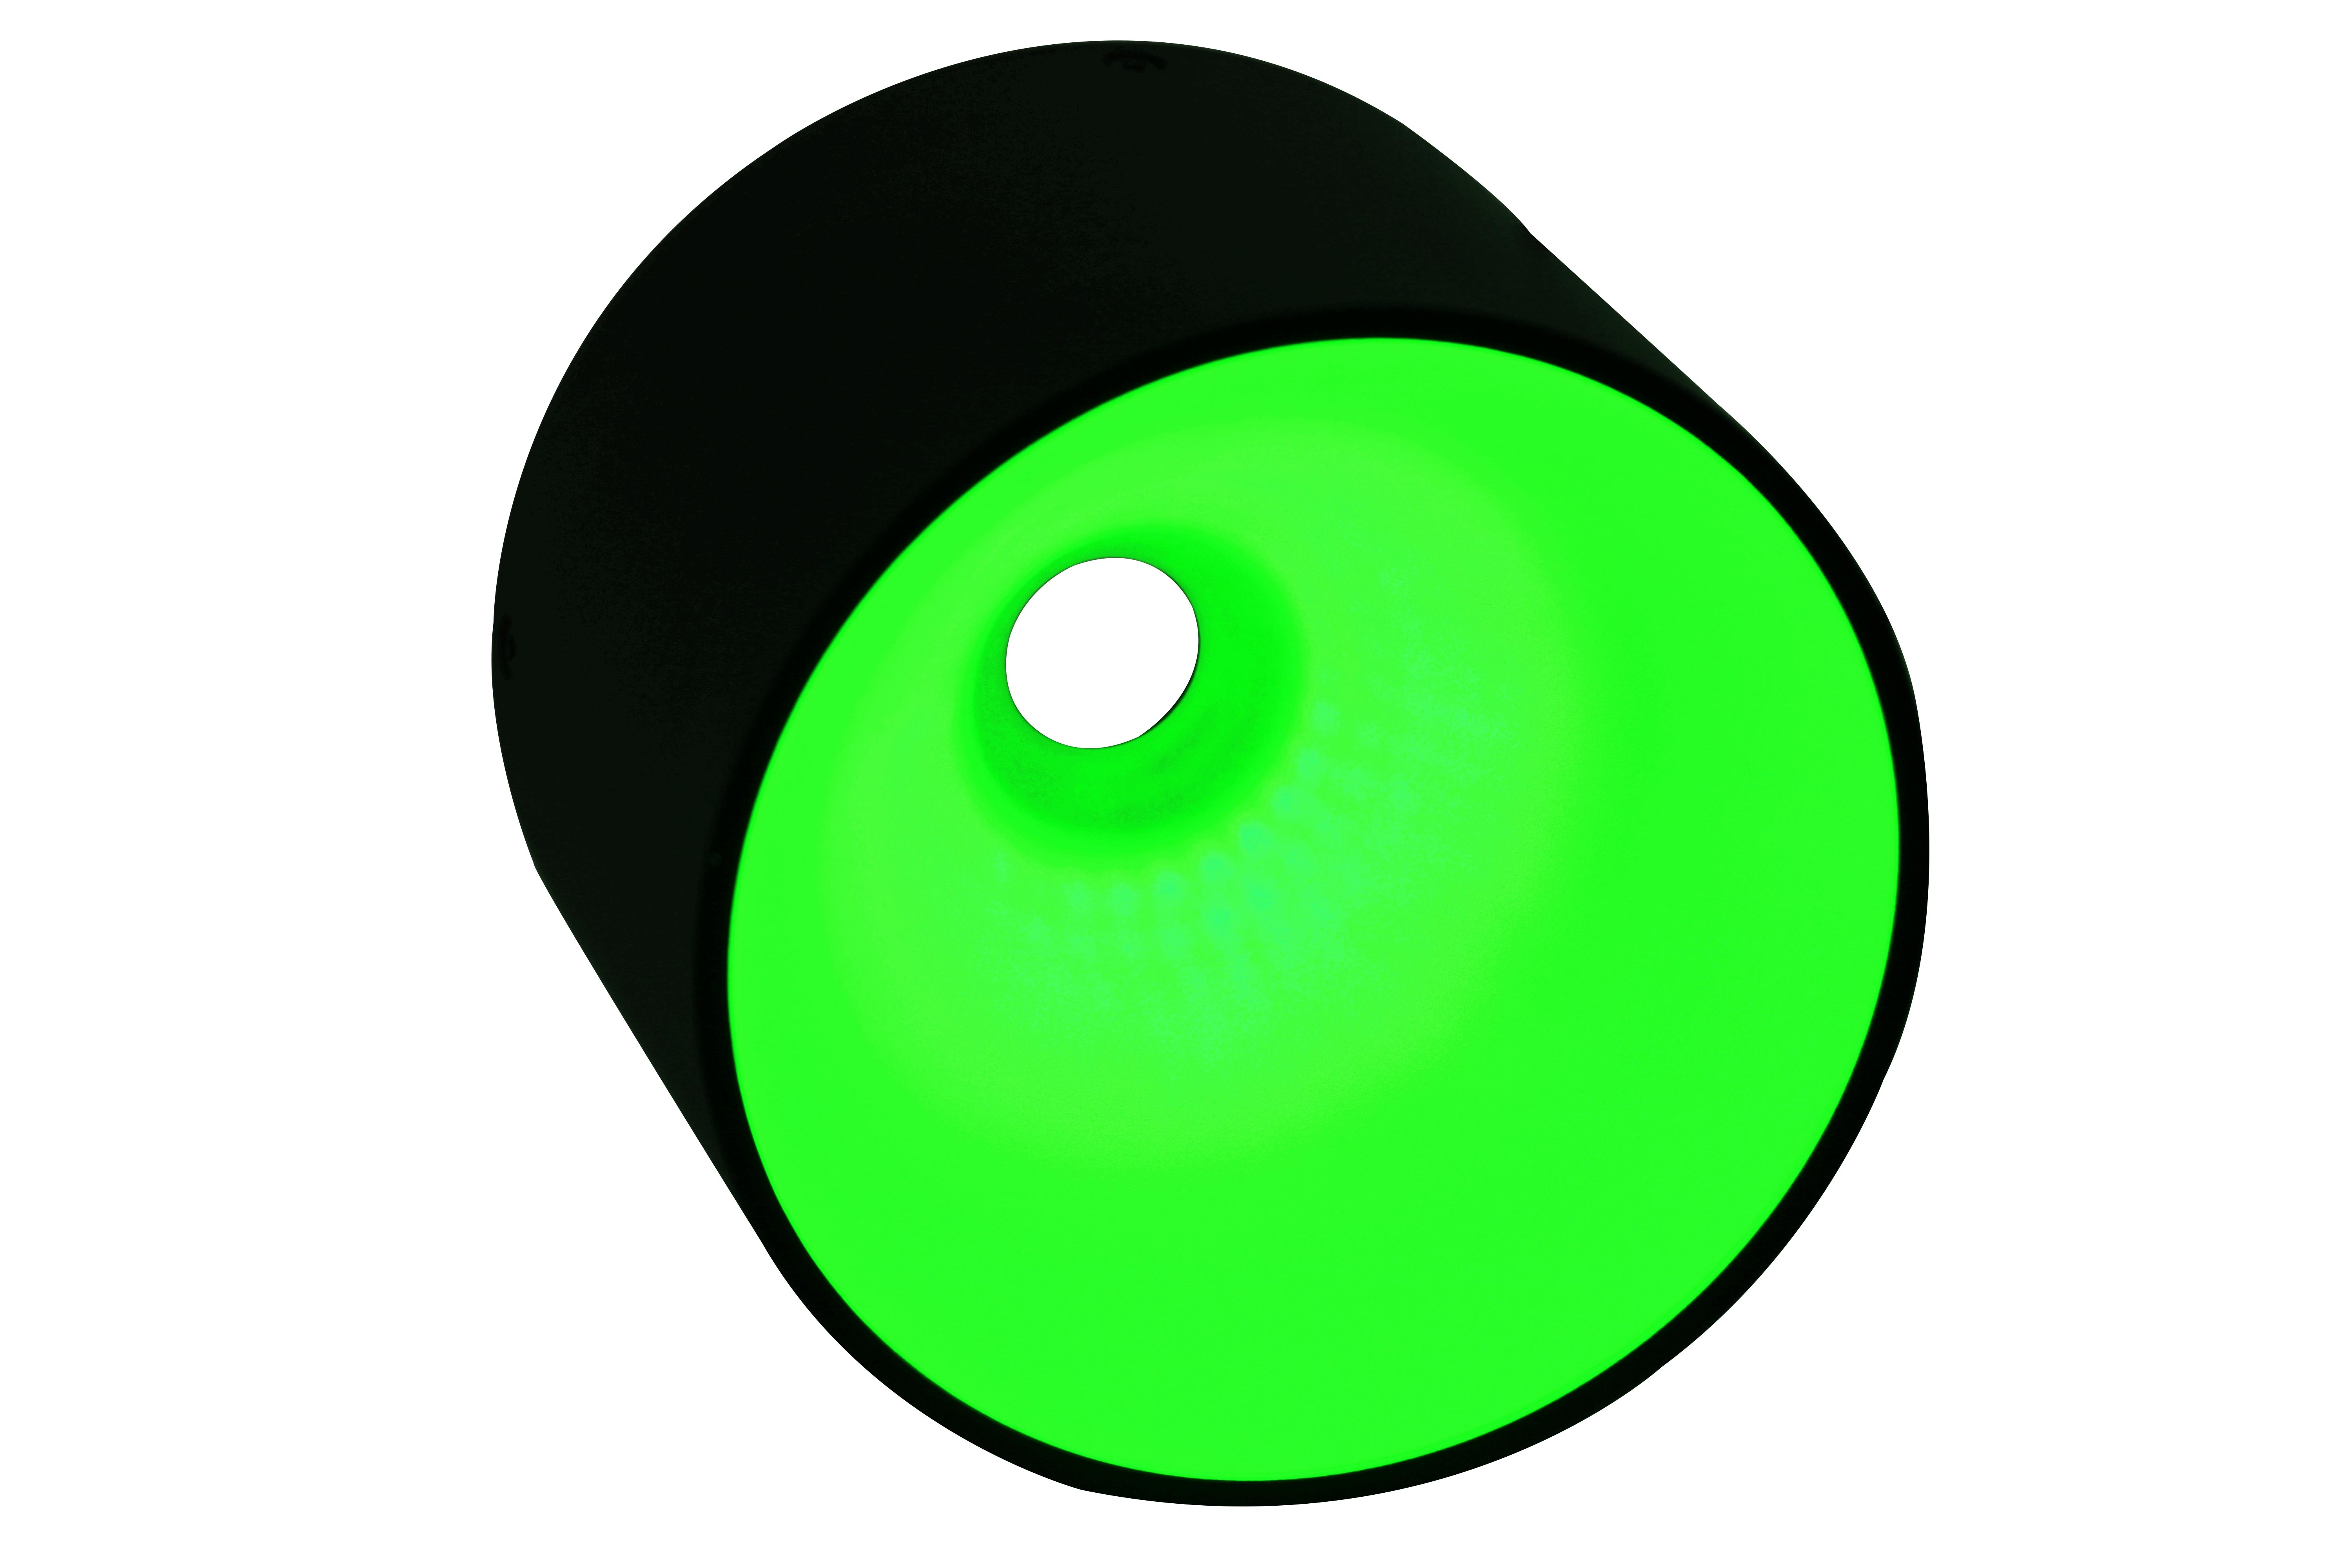 DO-54/11 Small Dome Illumination – Green